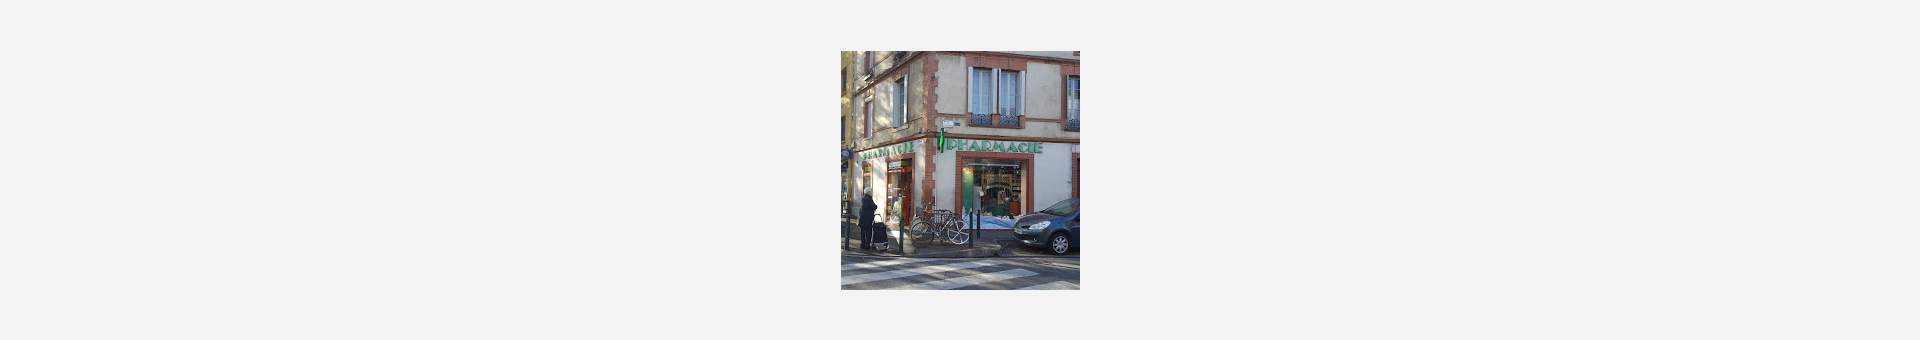 Pharmacie du Ravelin,Toulouse